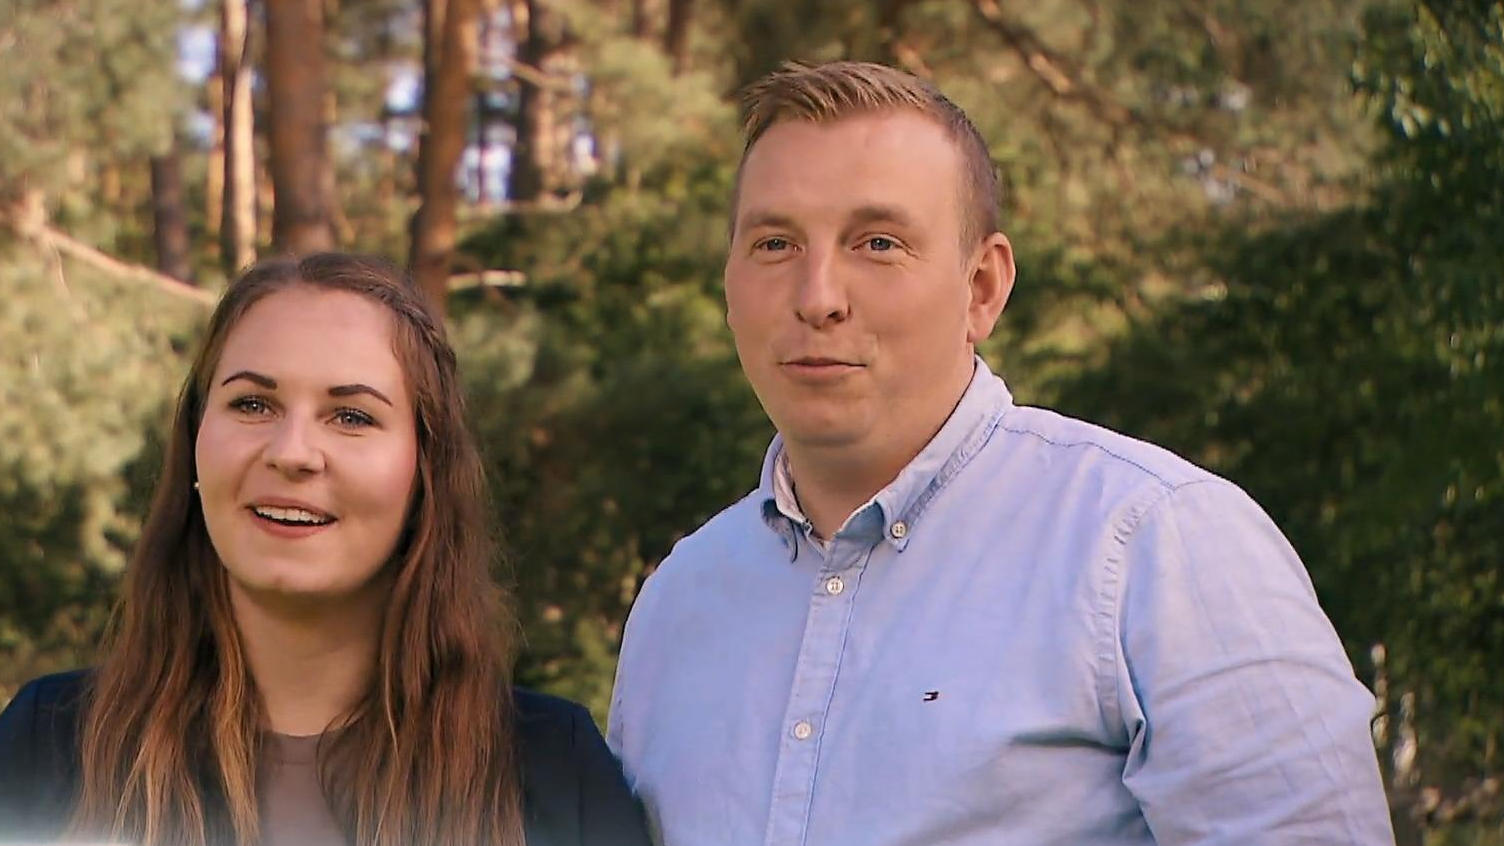 Landwirte Ulf und Anna Lena: "Wir sind ein Dreamteam" Ich fand Glück in der Liebe